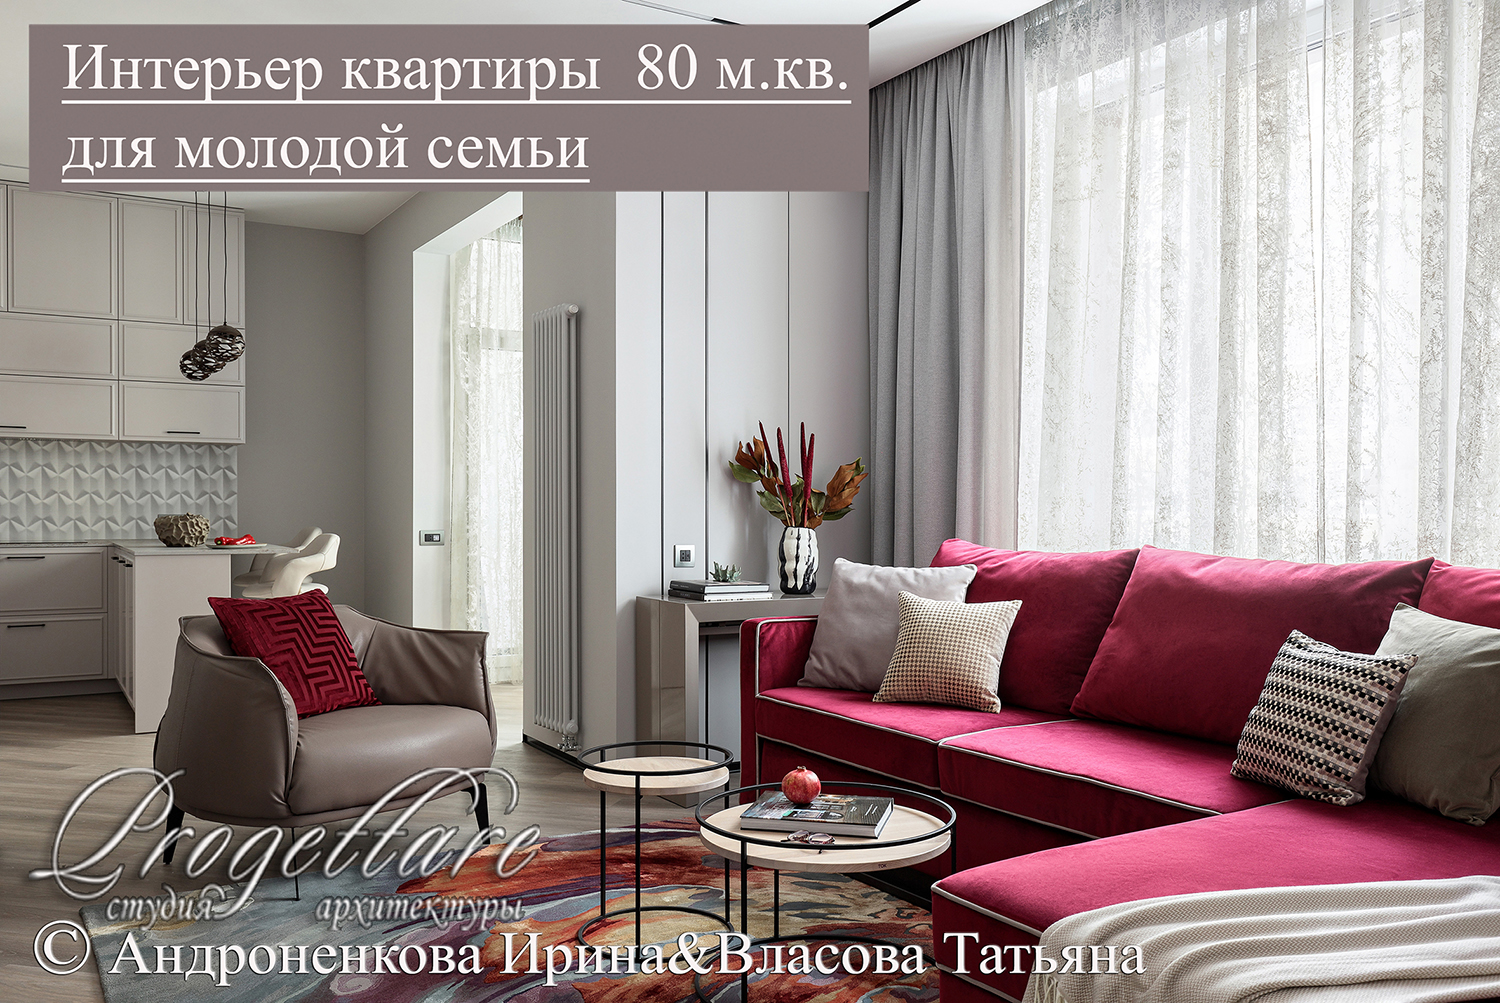 Дизайн квартиры 80 м.кв. в Санкт-Петербурге для молодой семьи